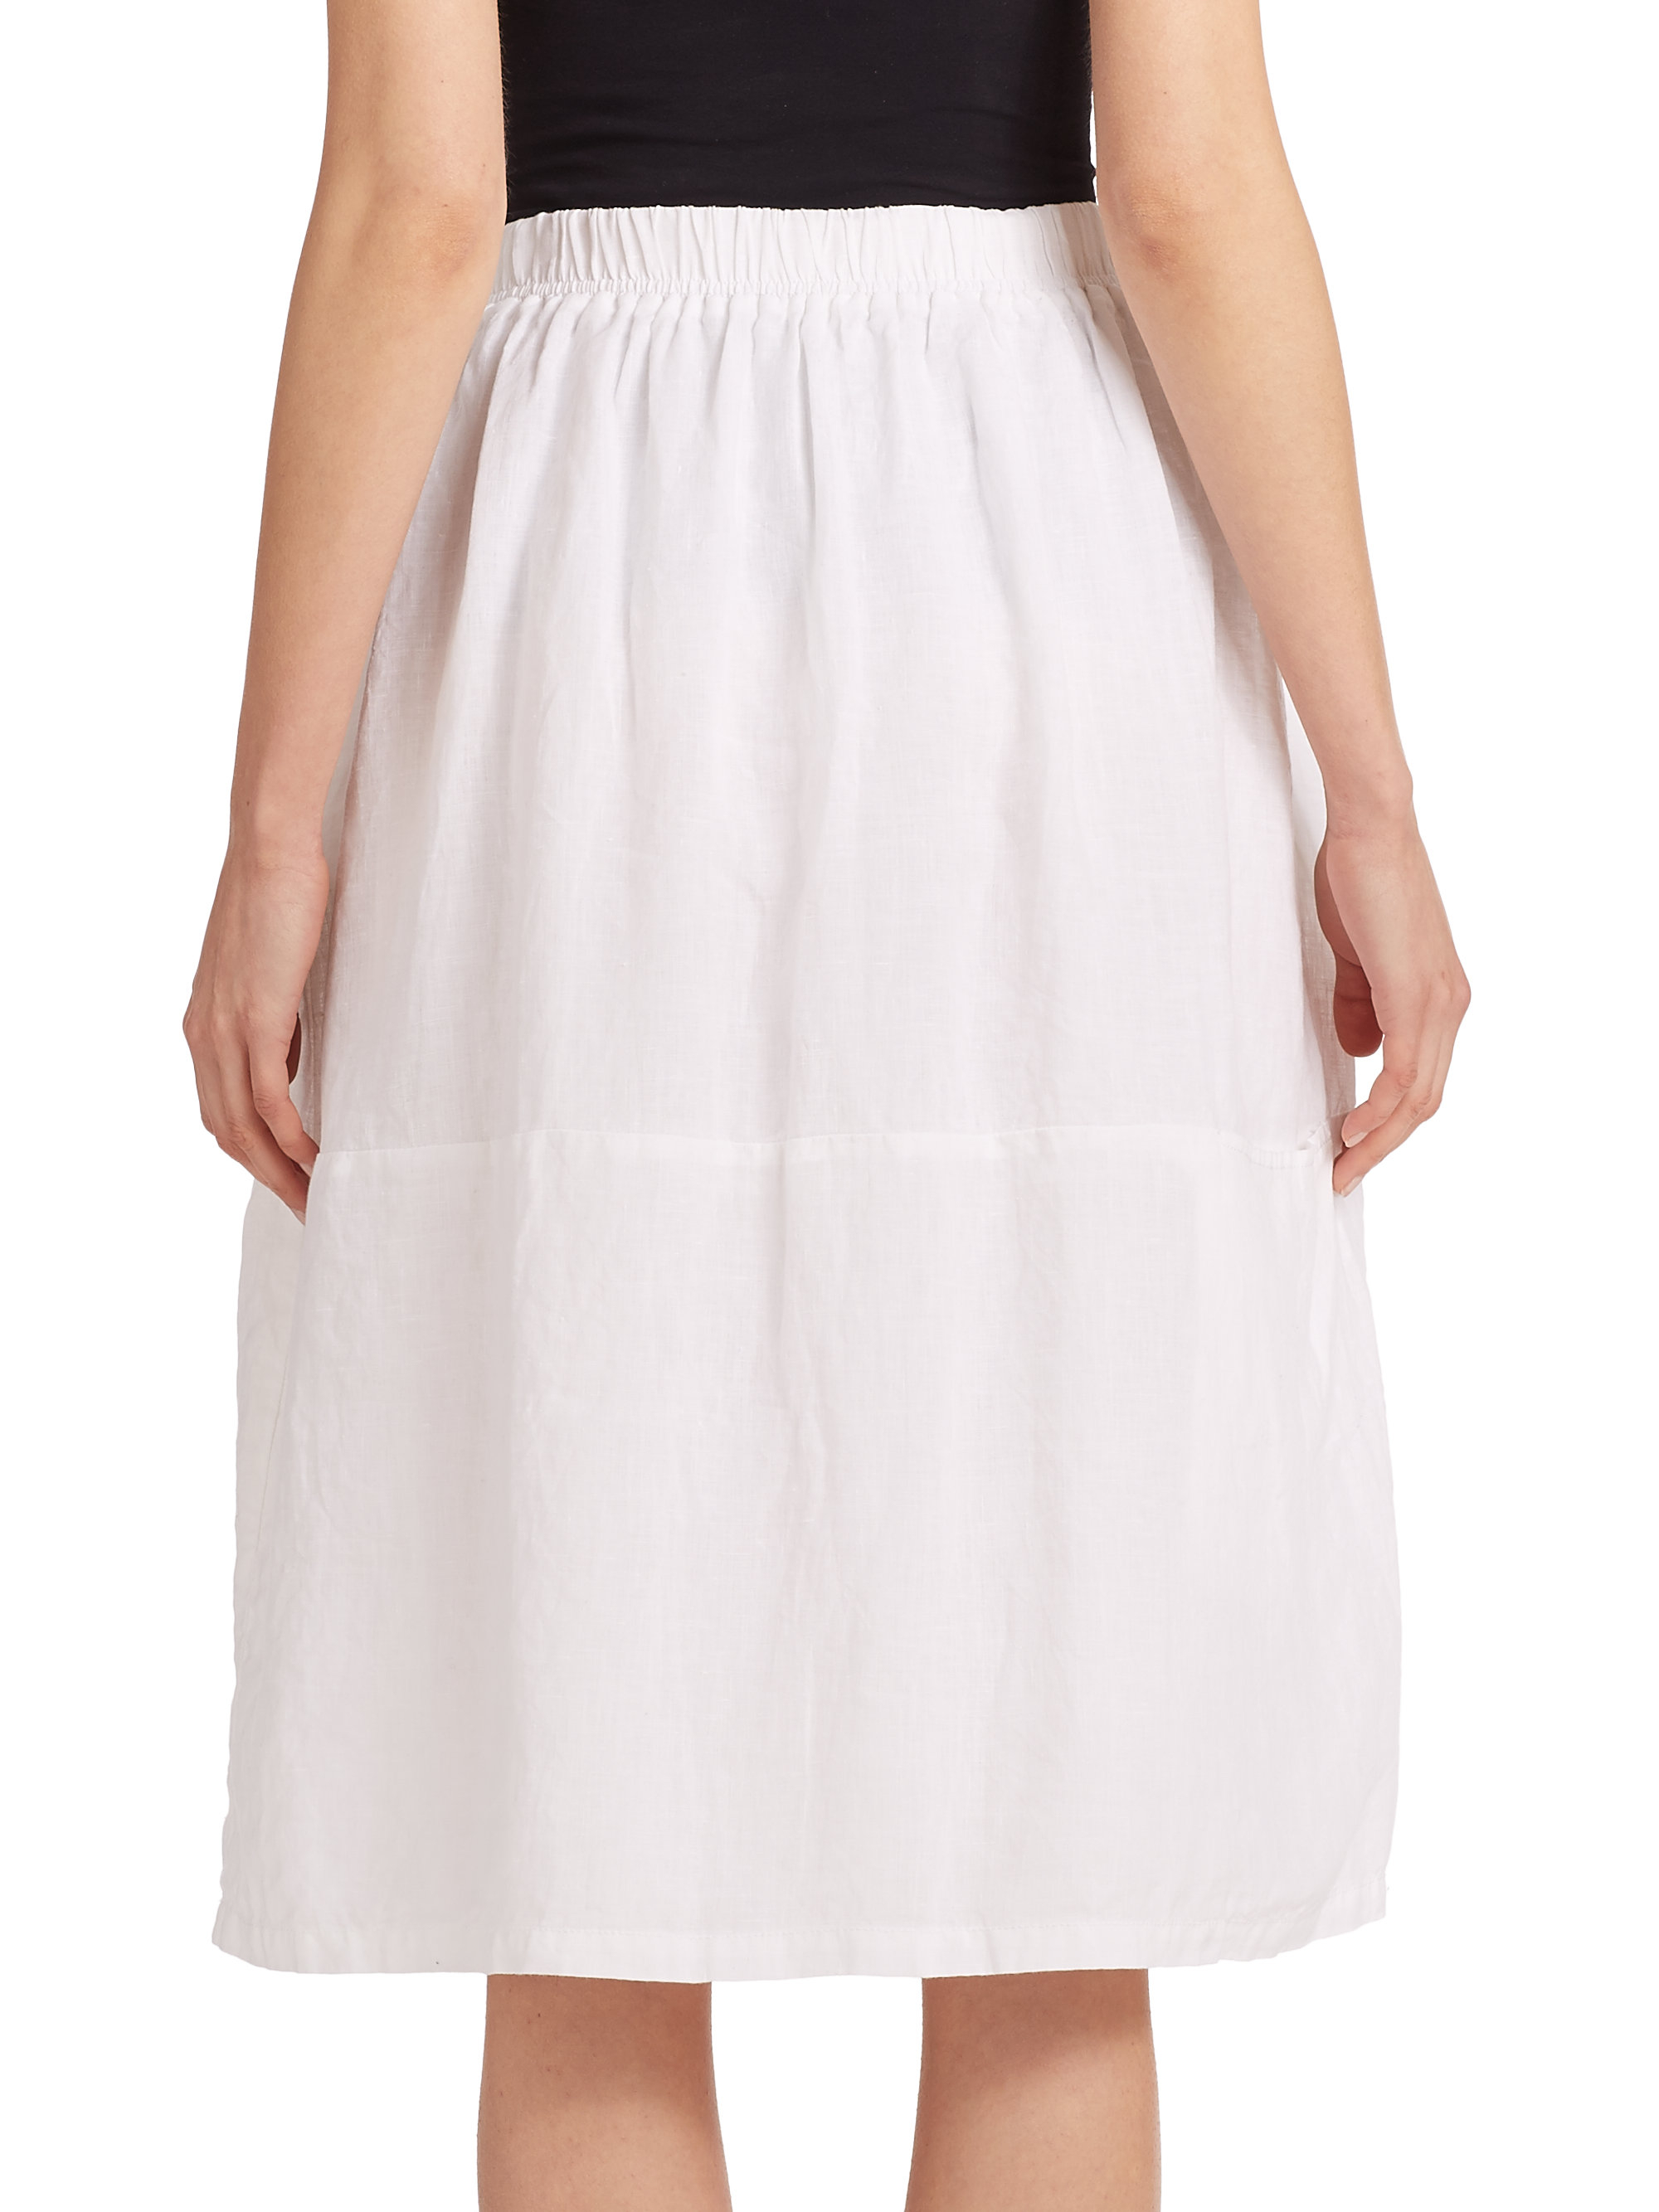 Eileen fisher Linen Skirt in White | Lyst